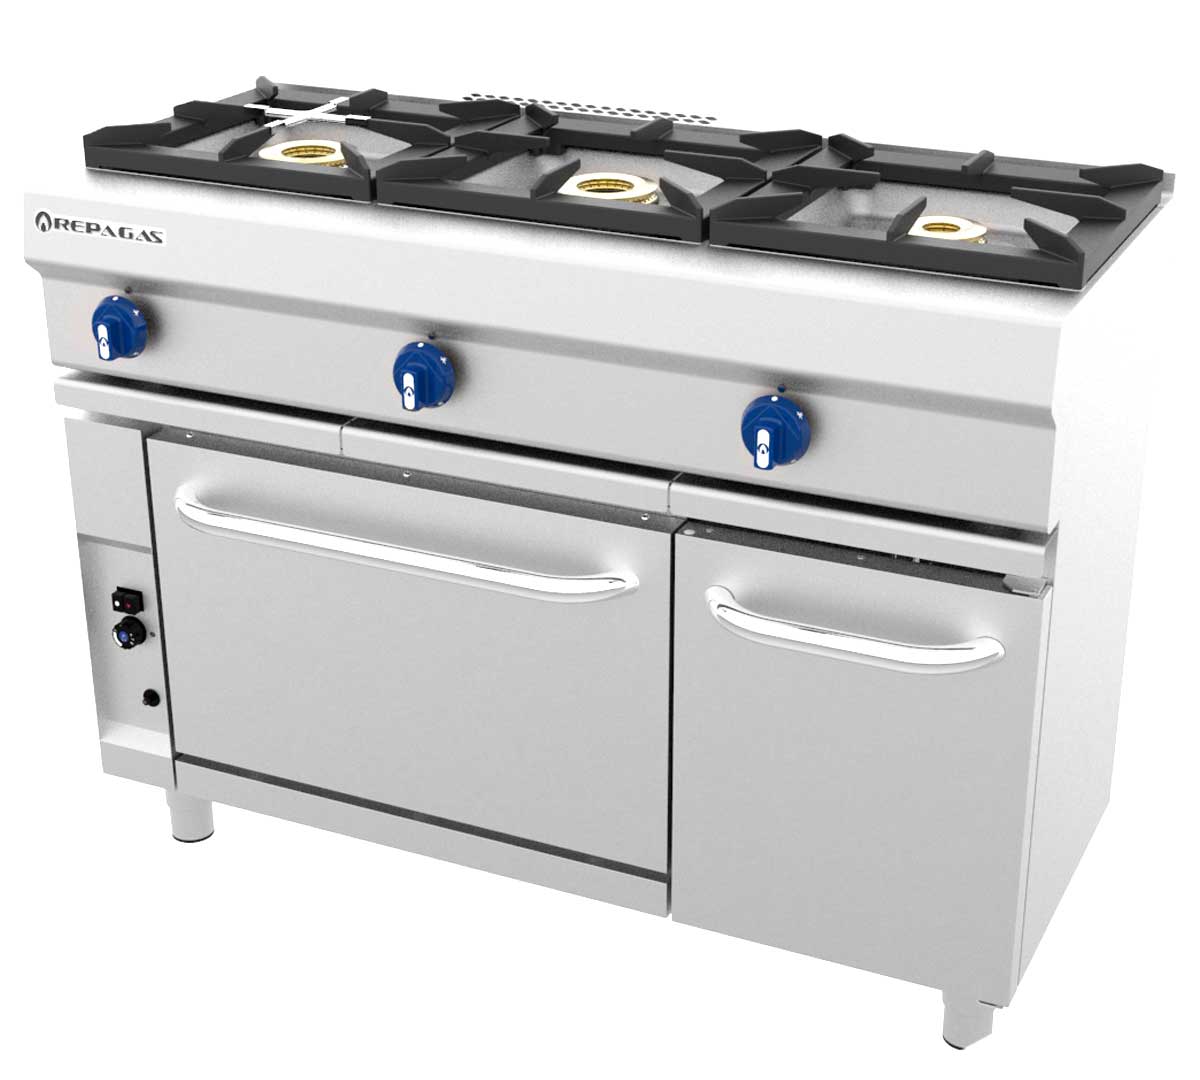 repagas-cocina-gas-550-modular-con-horno-cg-531g-01